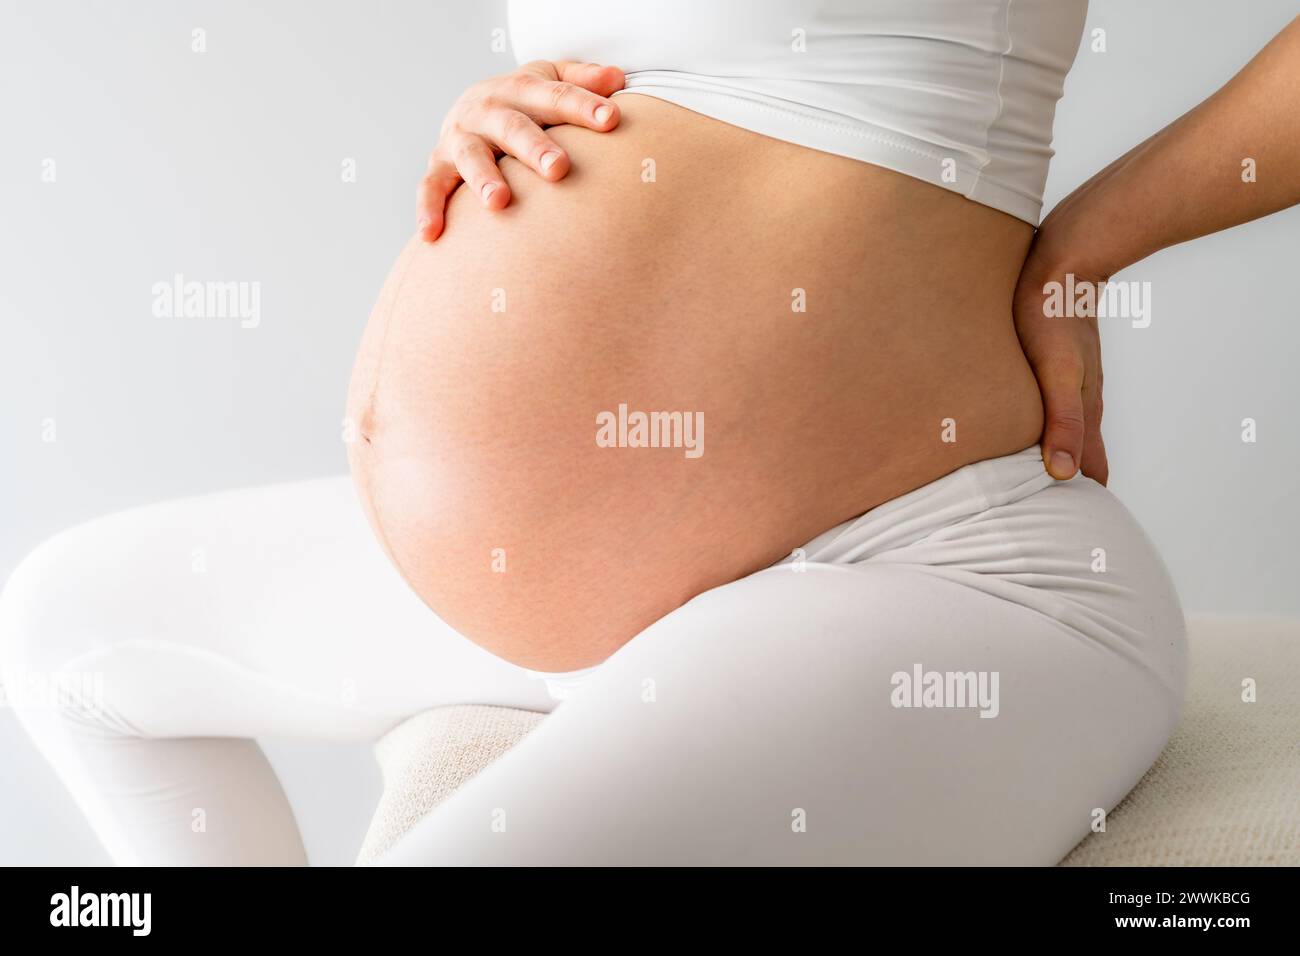 Beschreibung: Mittlerer Teil einer Frau mit stark schwangeren Baby-Unebenheiten, die auf einem Trainingsball sitzen und Rückenschmerzen spüren. Seitenansicht. Weißer Hintergrund. Br Stockfoto